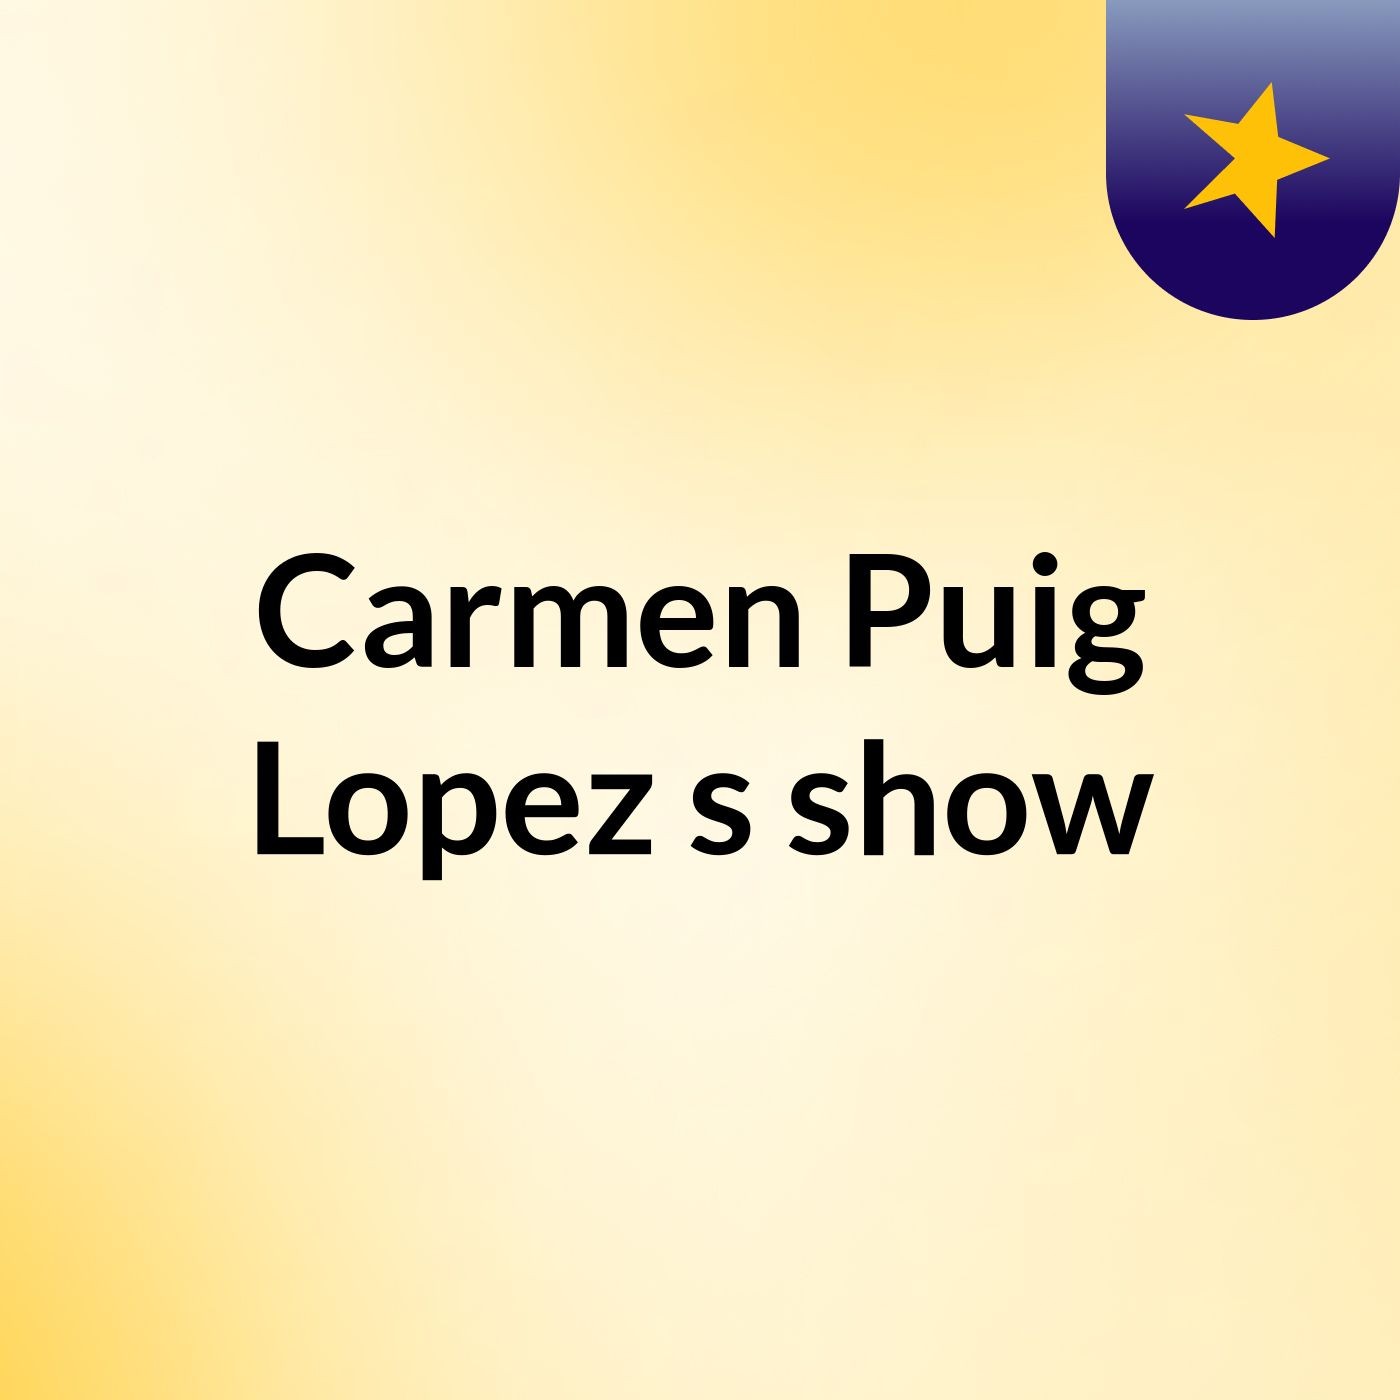 Carmen Puig Lopez's show